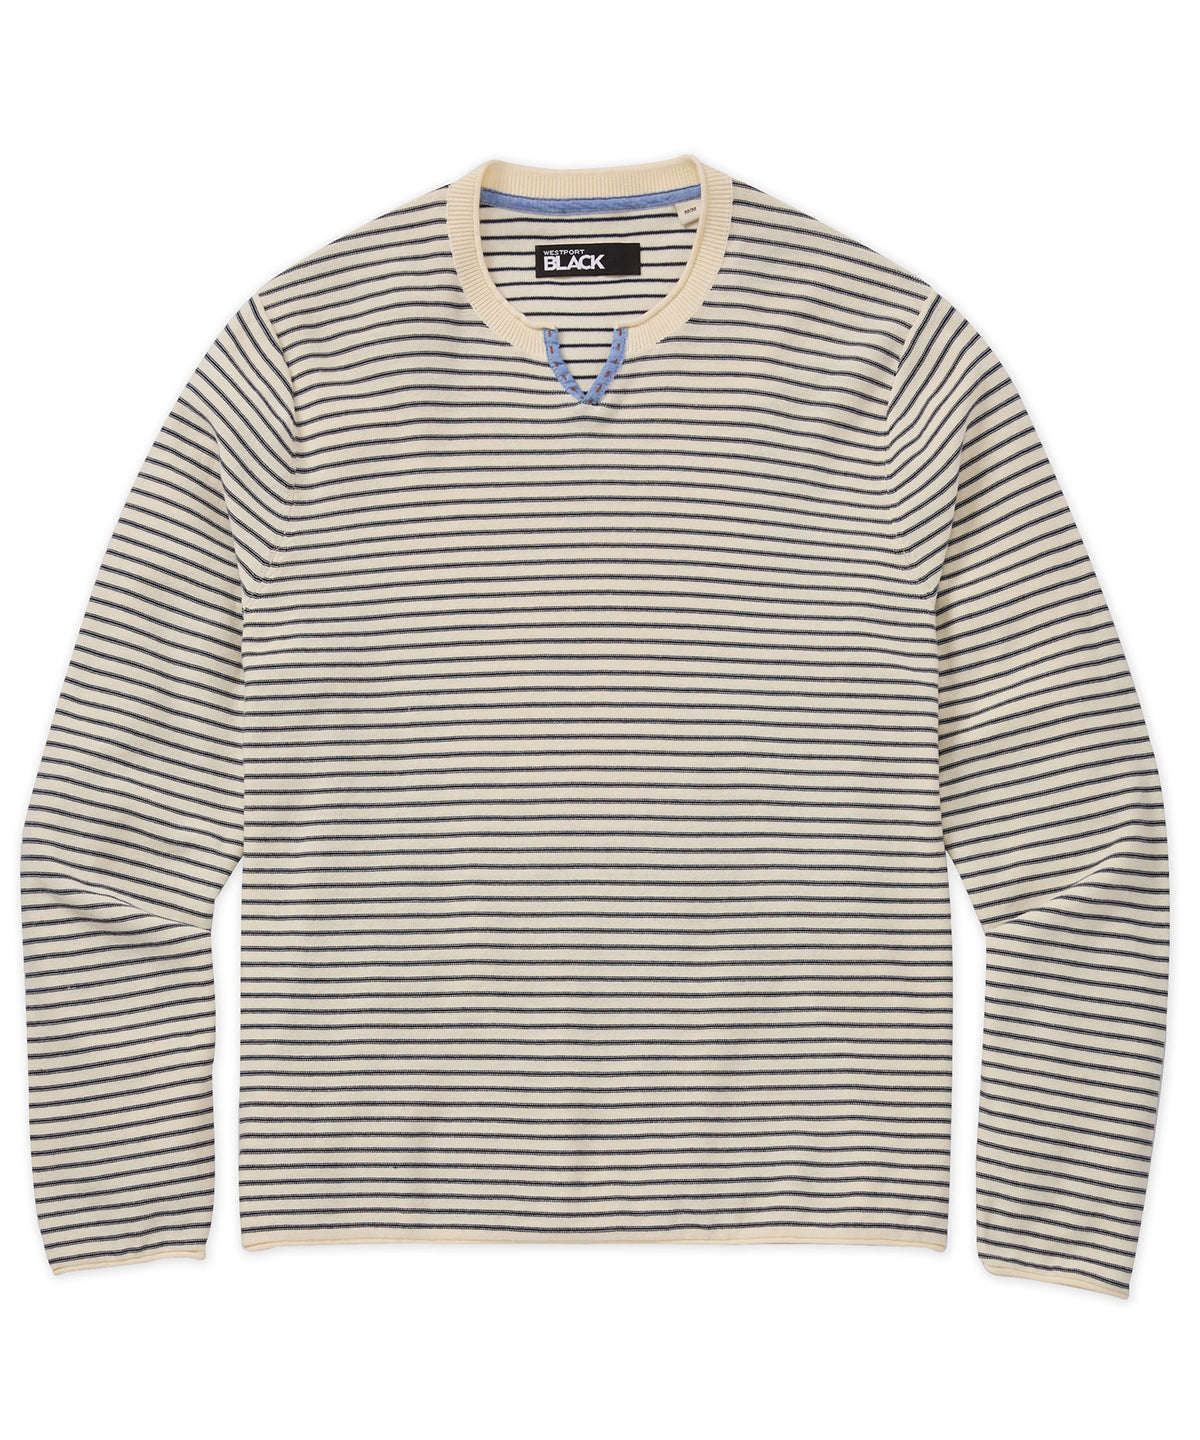 Westport Black Stripe Long Sleeve Sweater